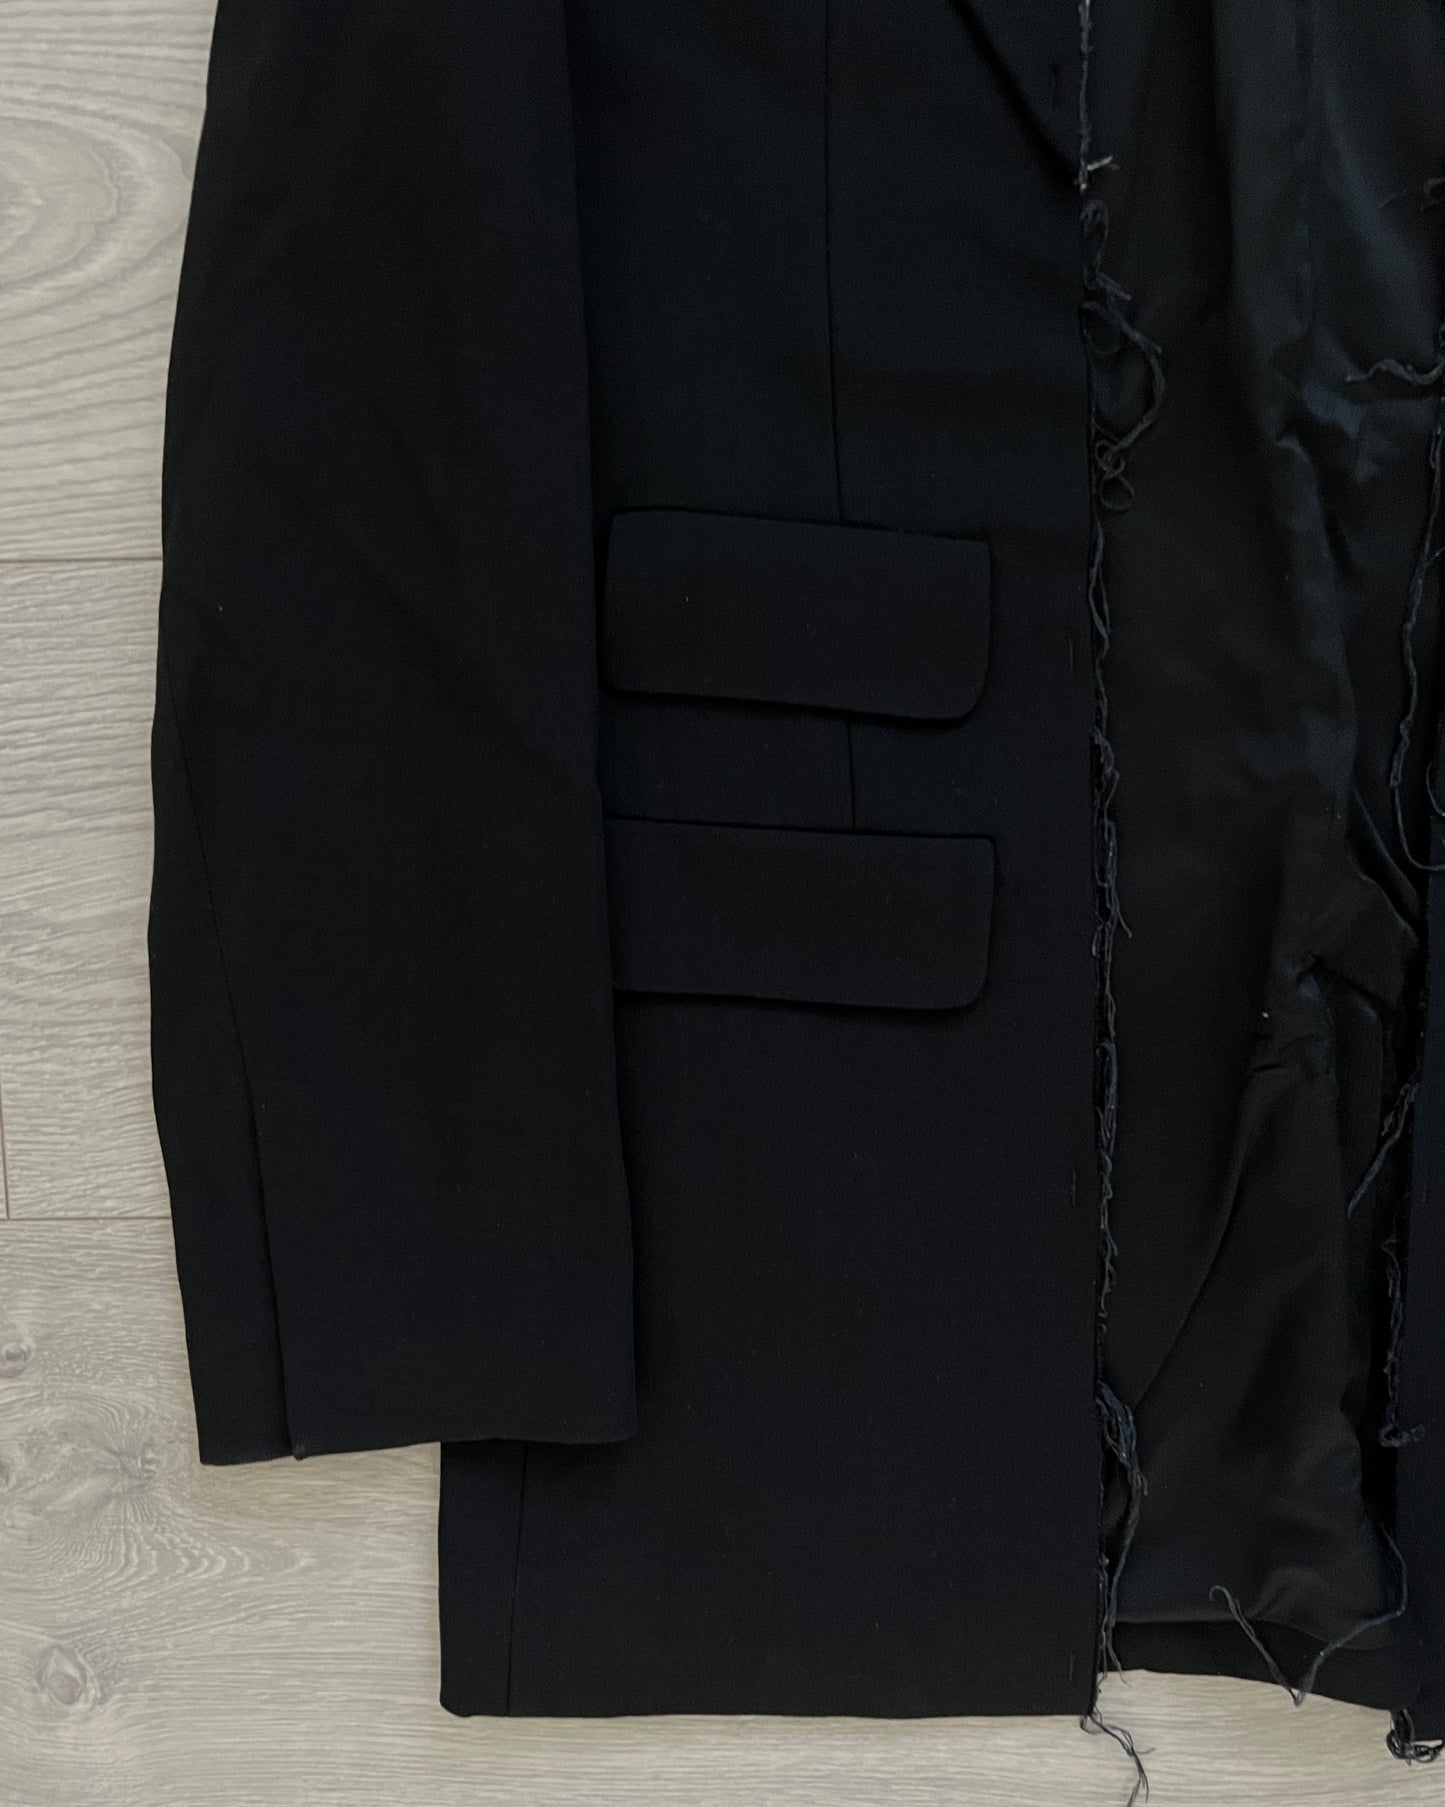 Maison Martin Margiela 2002 Rare Defile Deconstructed Artisanal Jacket - Size IT40